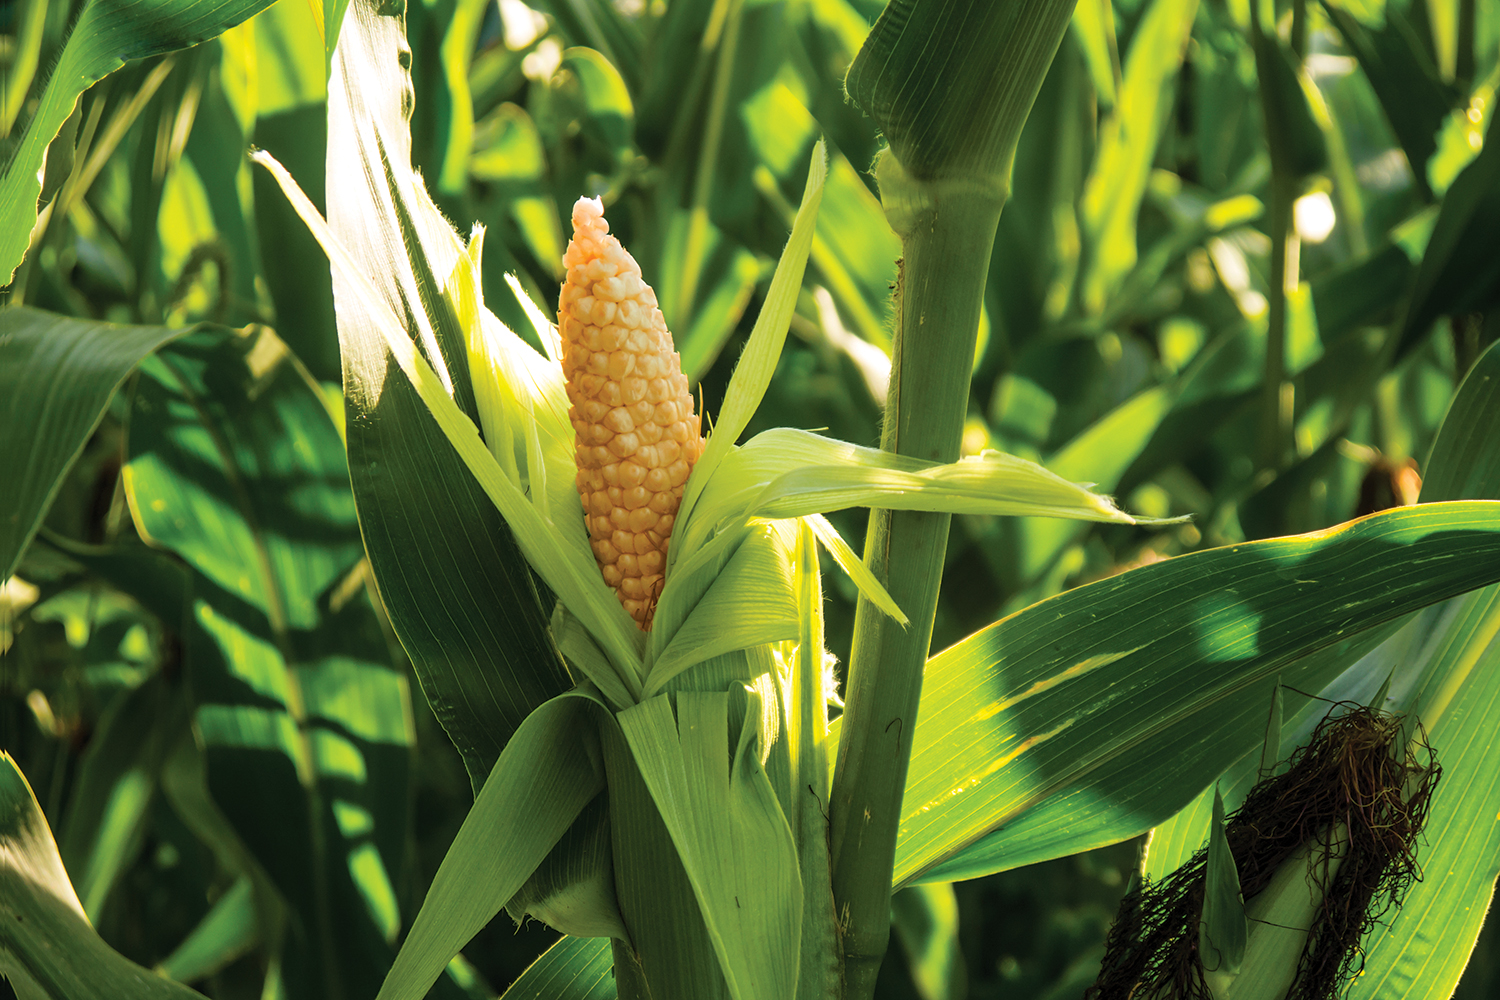 Corn in field small